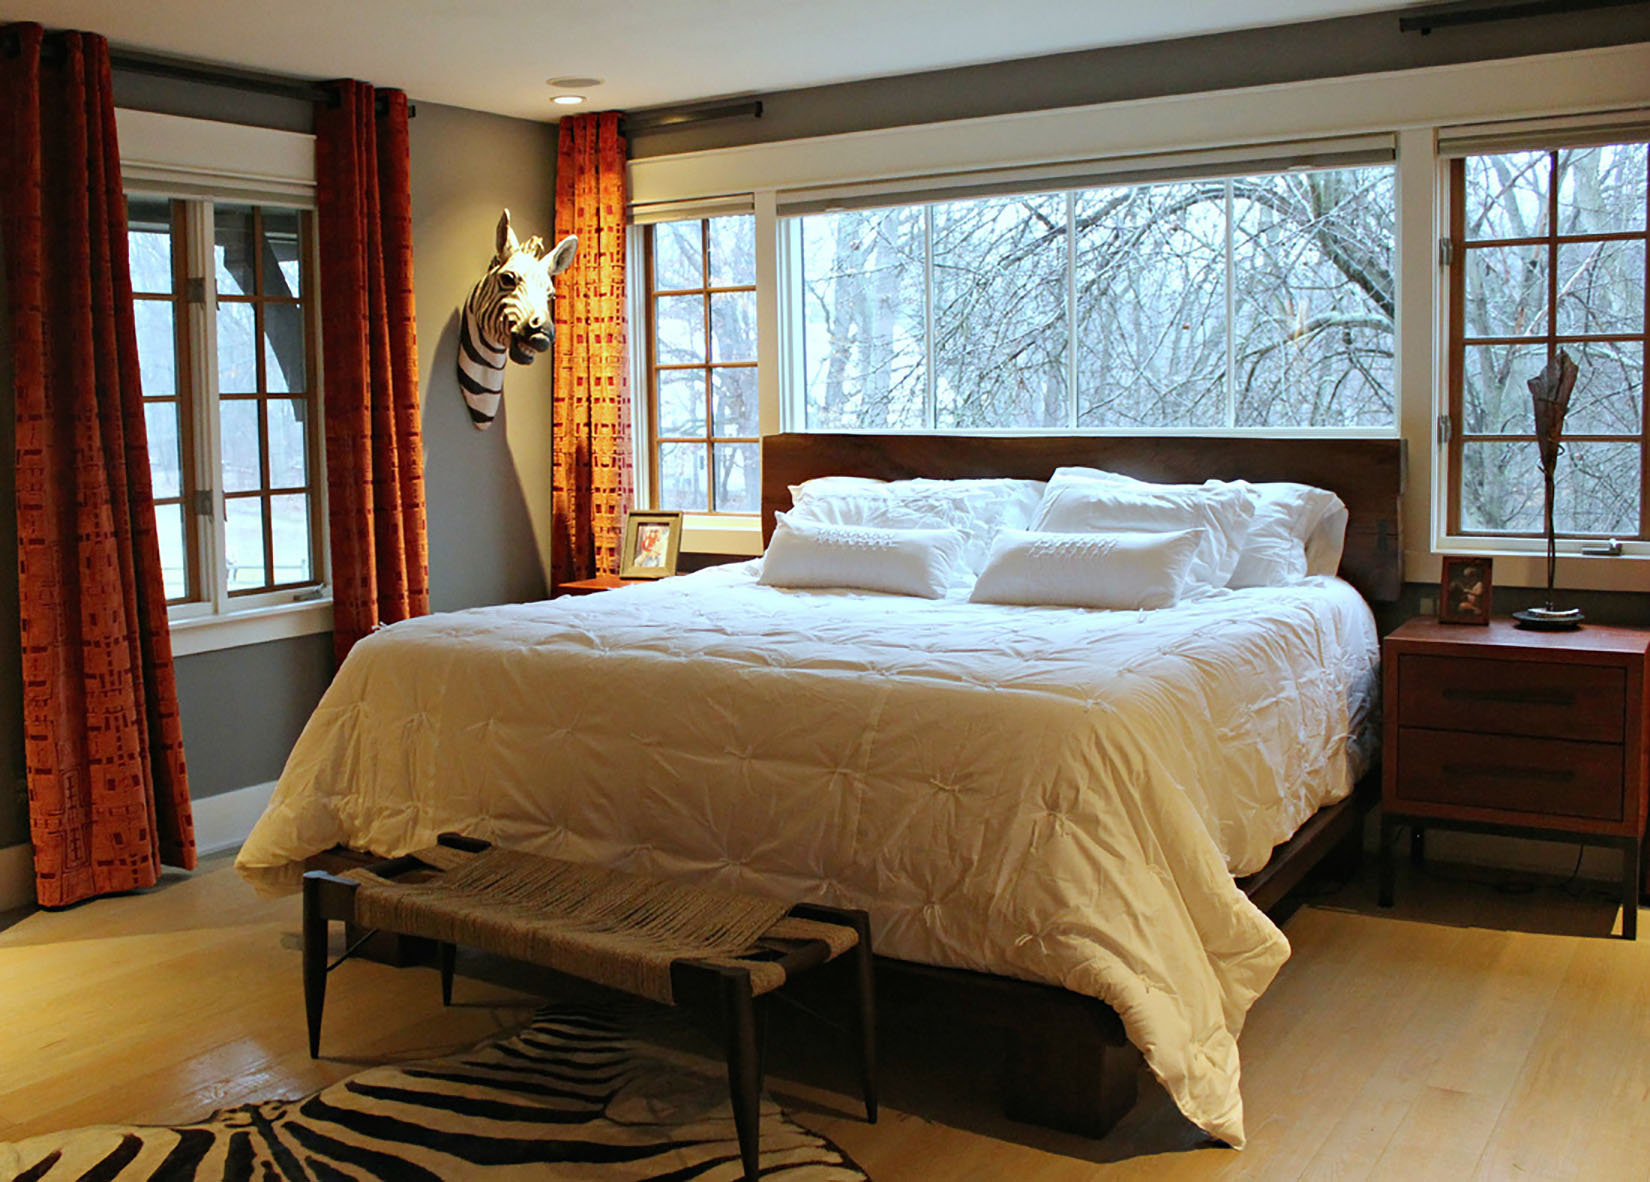 Bedrooms - DMC Design Custom Interiors